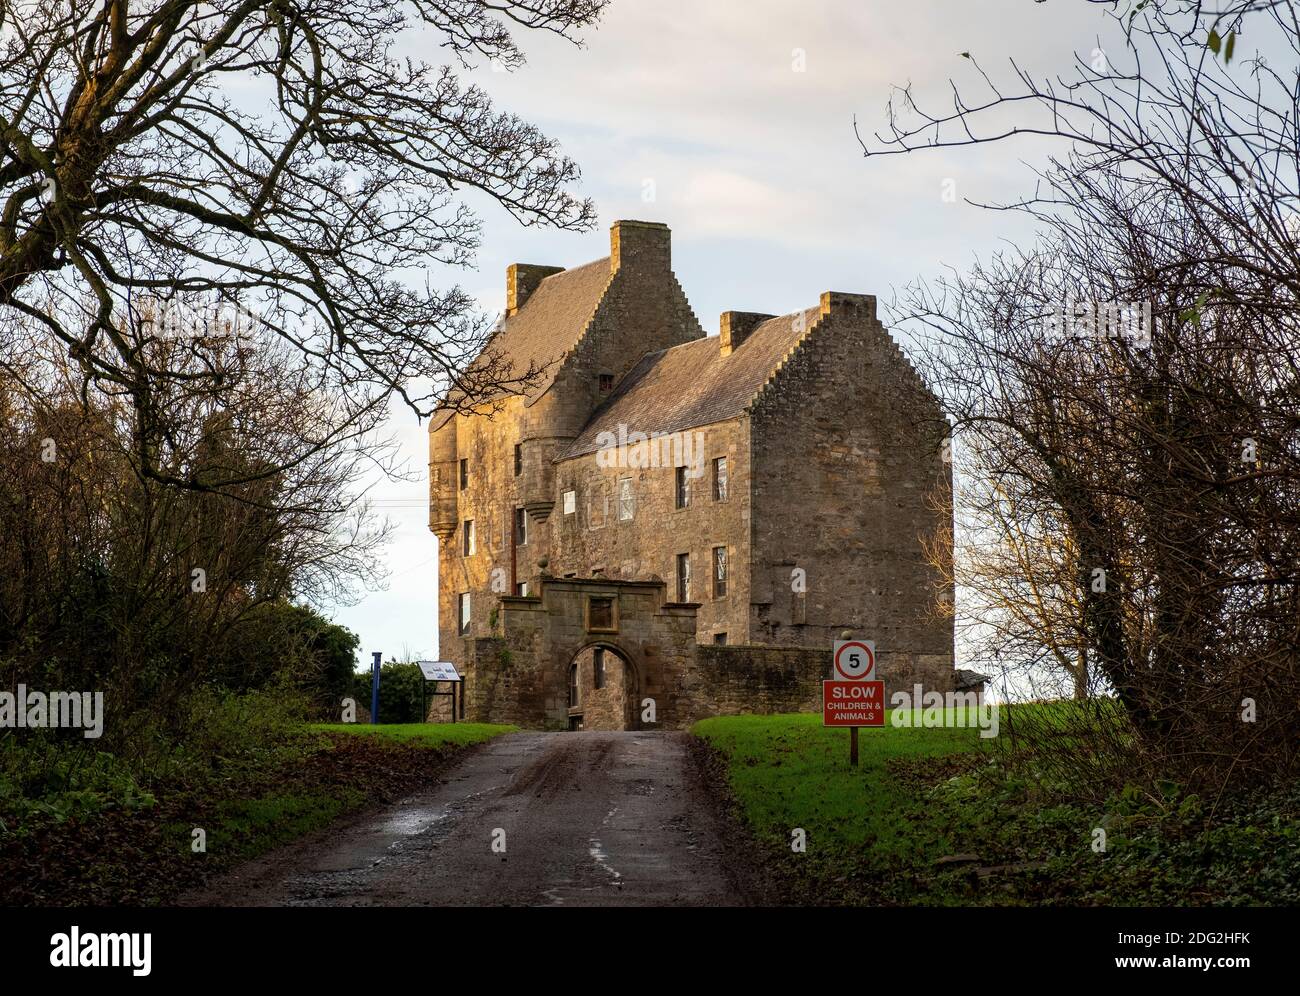 Il castello di Midhope, Abercorn, Hopetoun station wagon, South Queensferry. Il castello è noto ad attrito come 'Lallybroch', in Outlander serie tv. Foto Stock